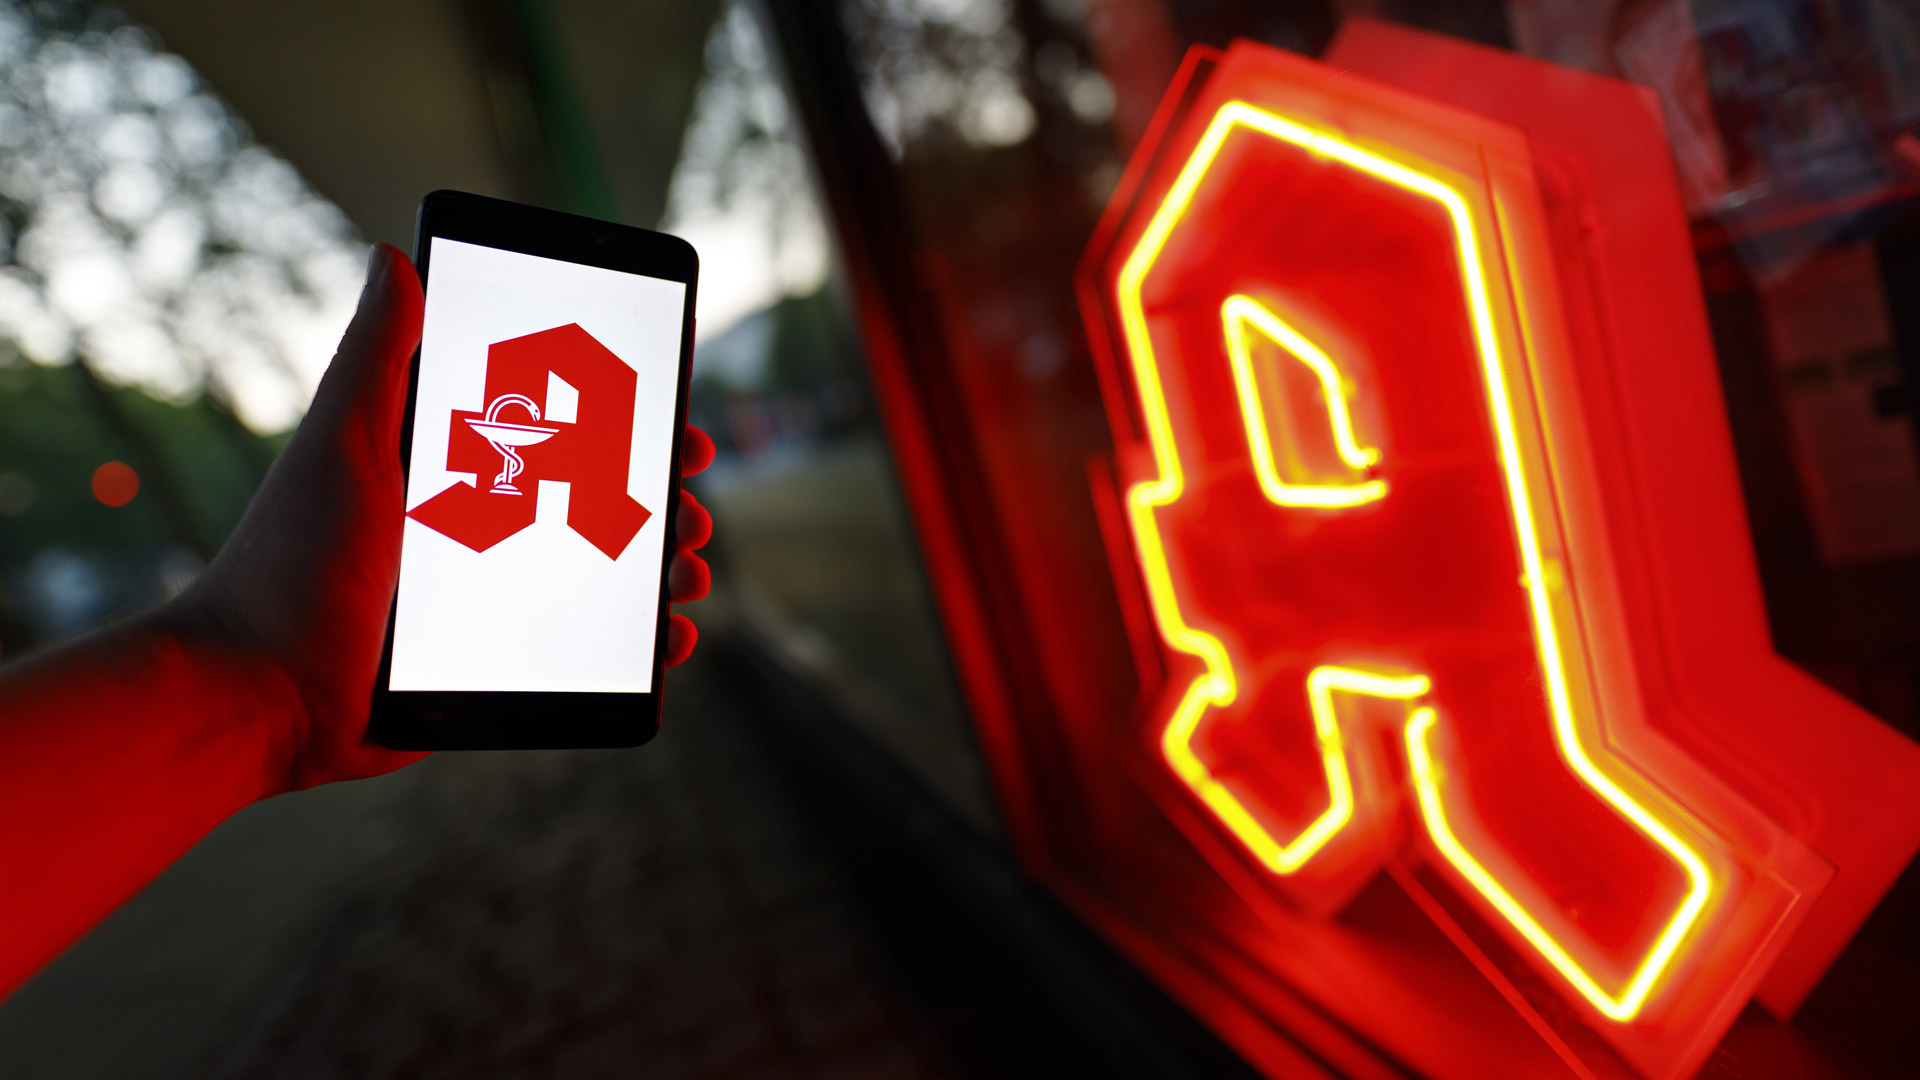 Leuchtendes Apotheken-Logo und rotes Apotheken-A auf einem Smartphone